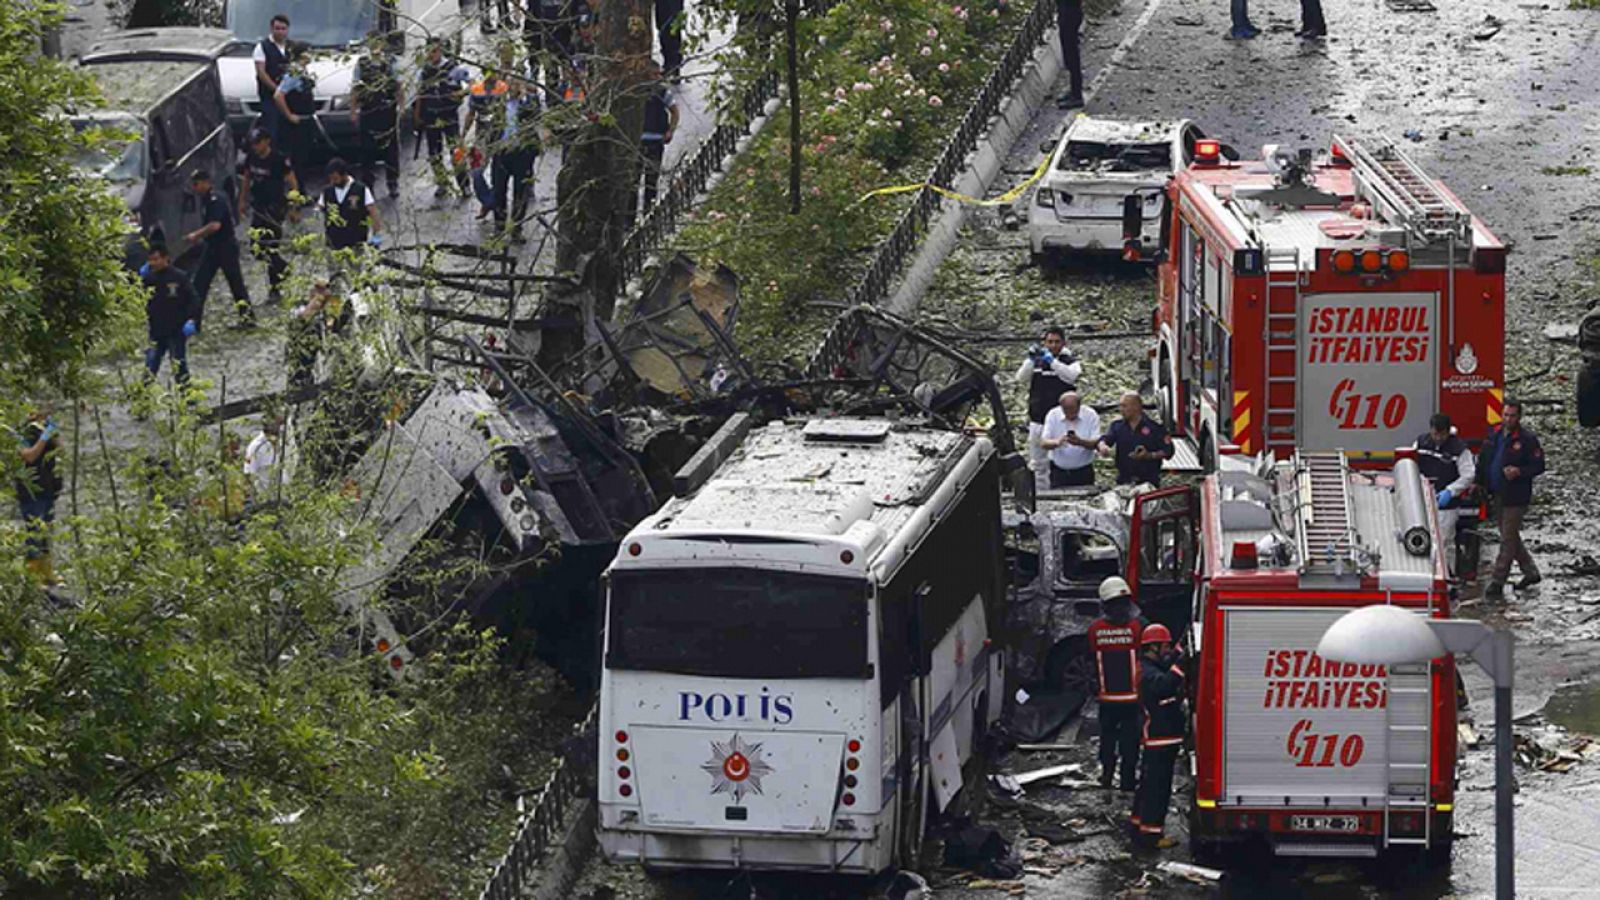 Un atentado suicida contra un autobús en Estabul deja 11 muertos y 36 heridos